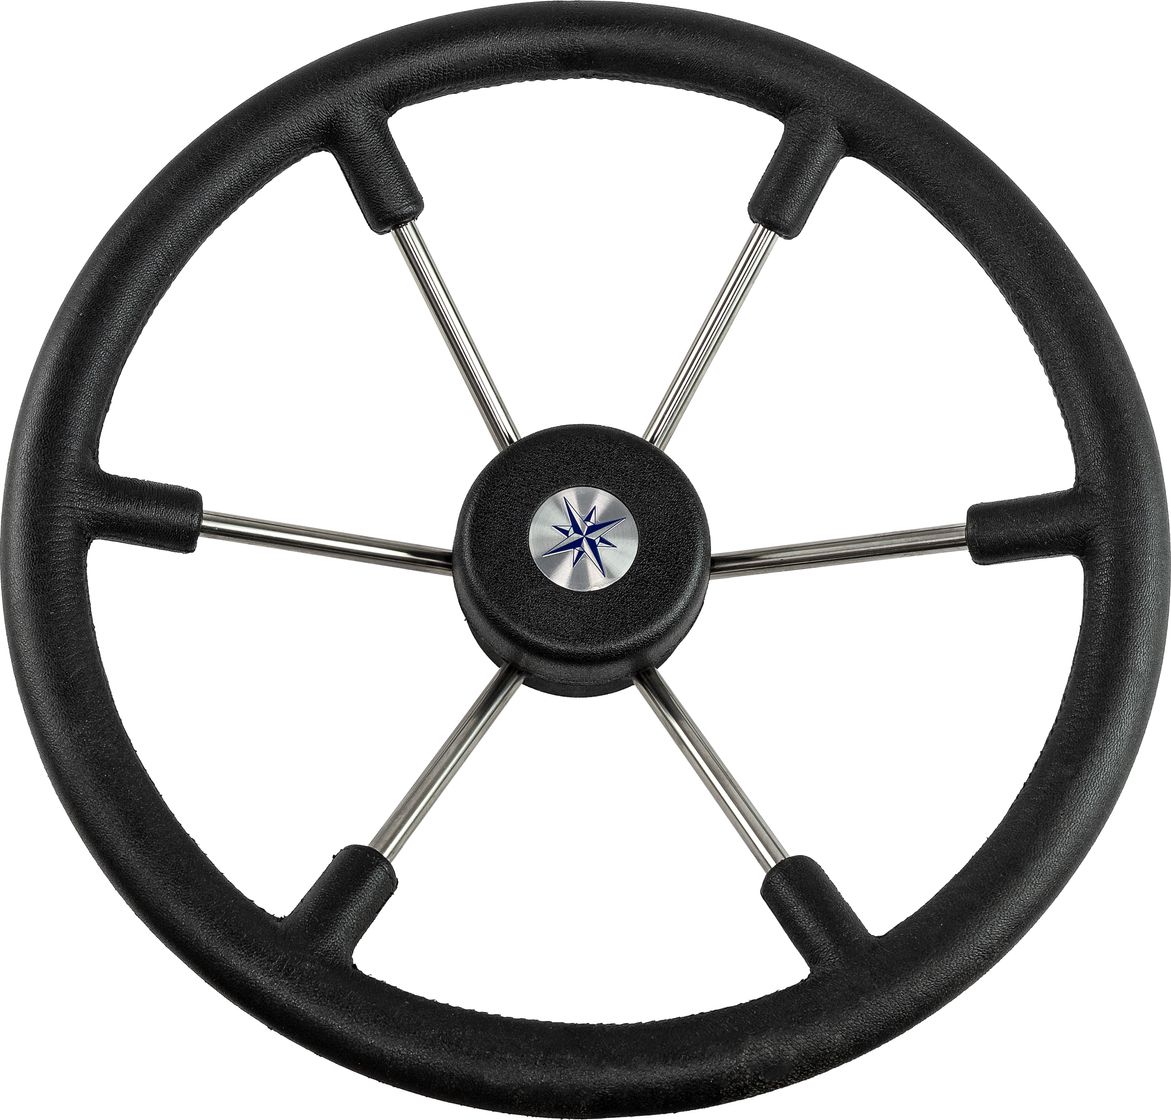 Рулевое колесо LEADER TANEGUM черный обод серебряные спицы д. 400 мм VN7400-01 рулевое колесо leader plast обод серебряные спицы д 330 мм vn8330 01